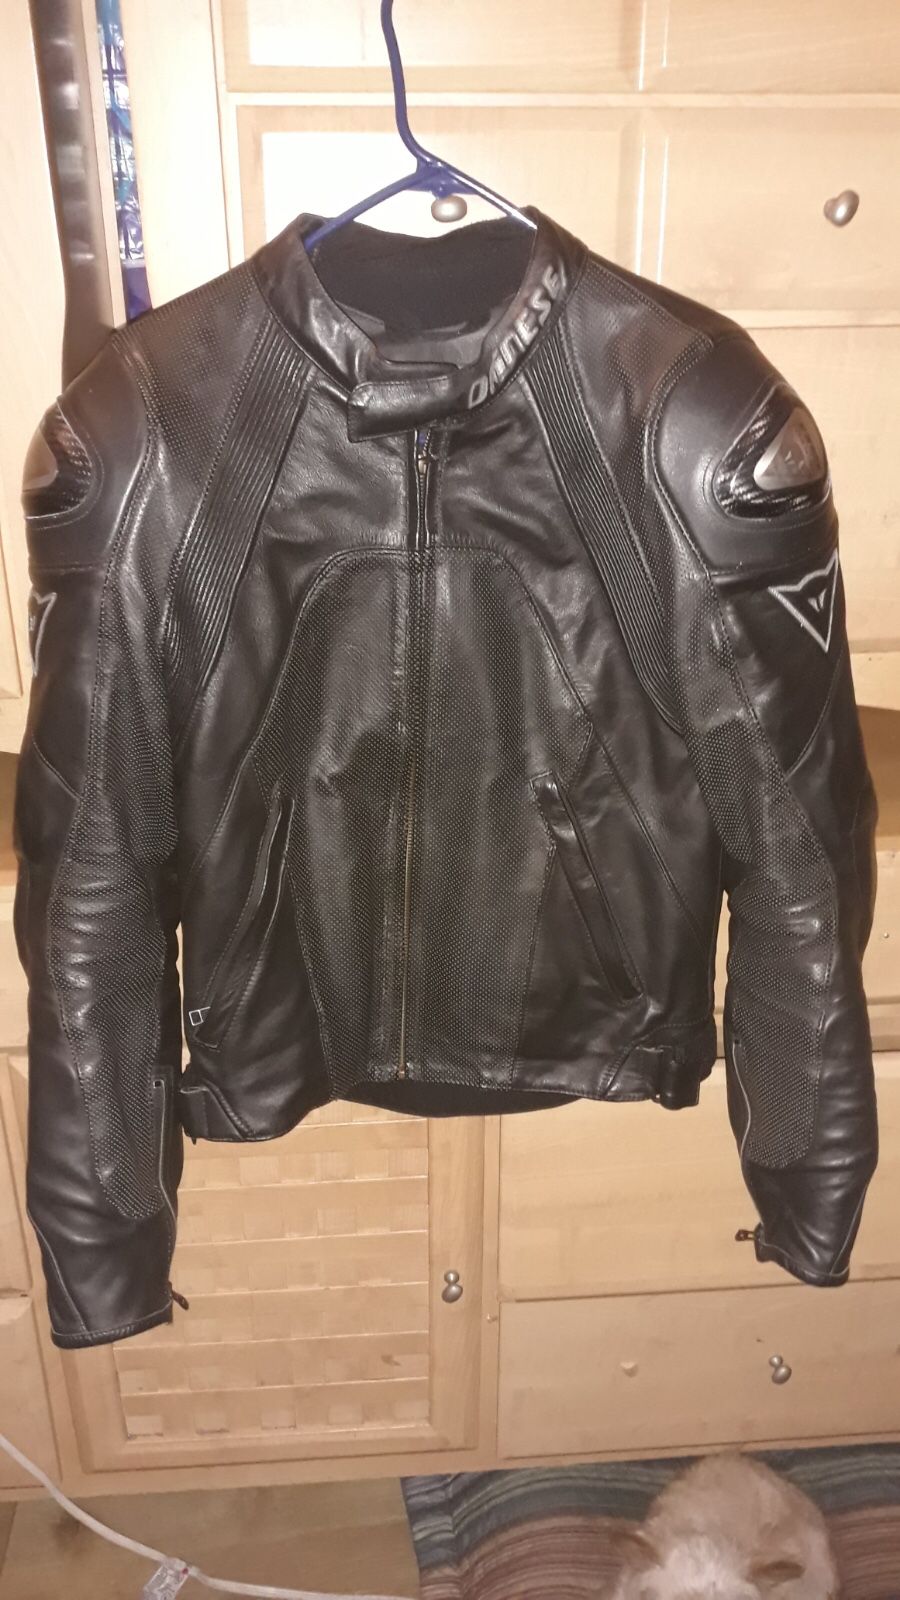 Dainese motorcycle jacket size 48